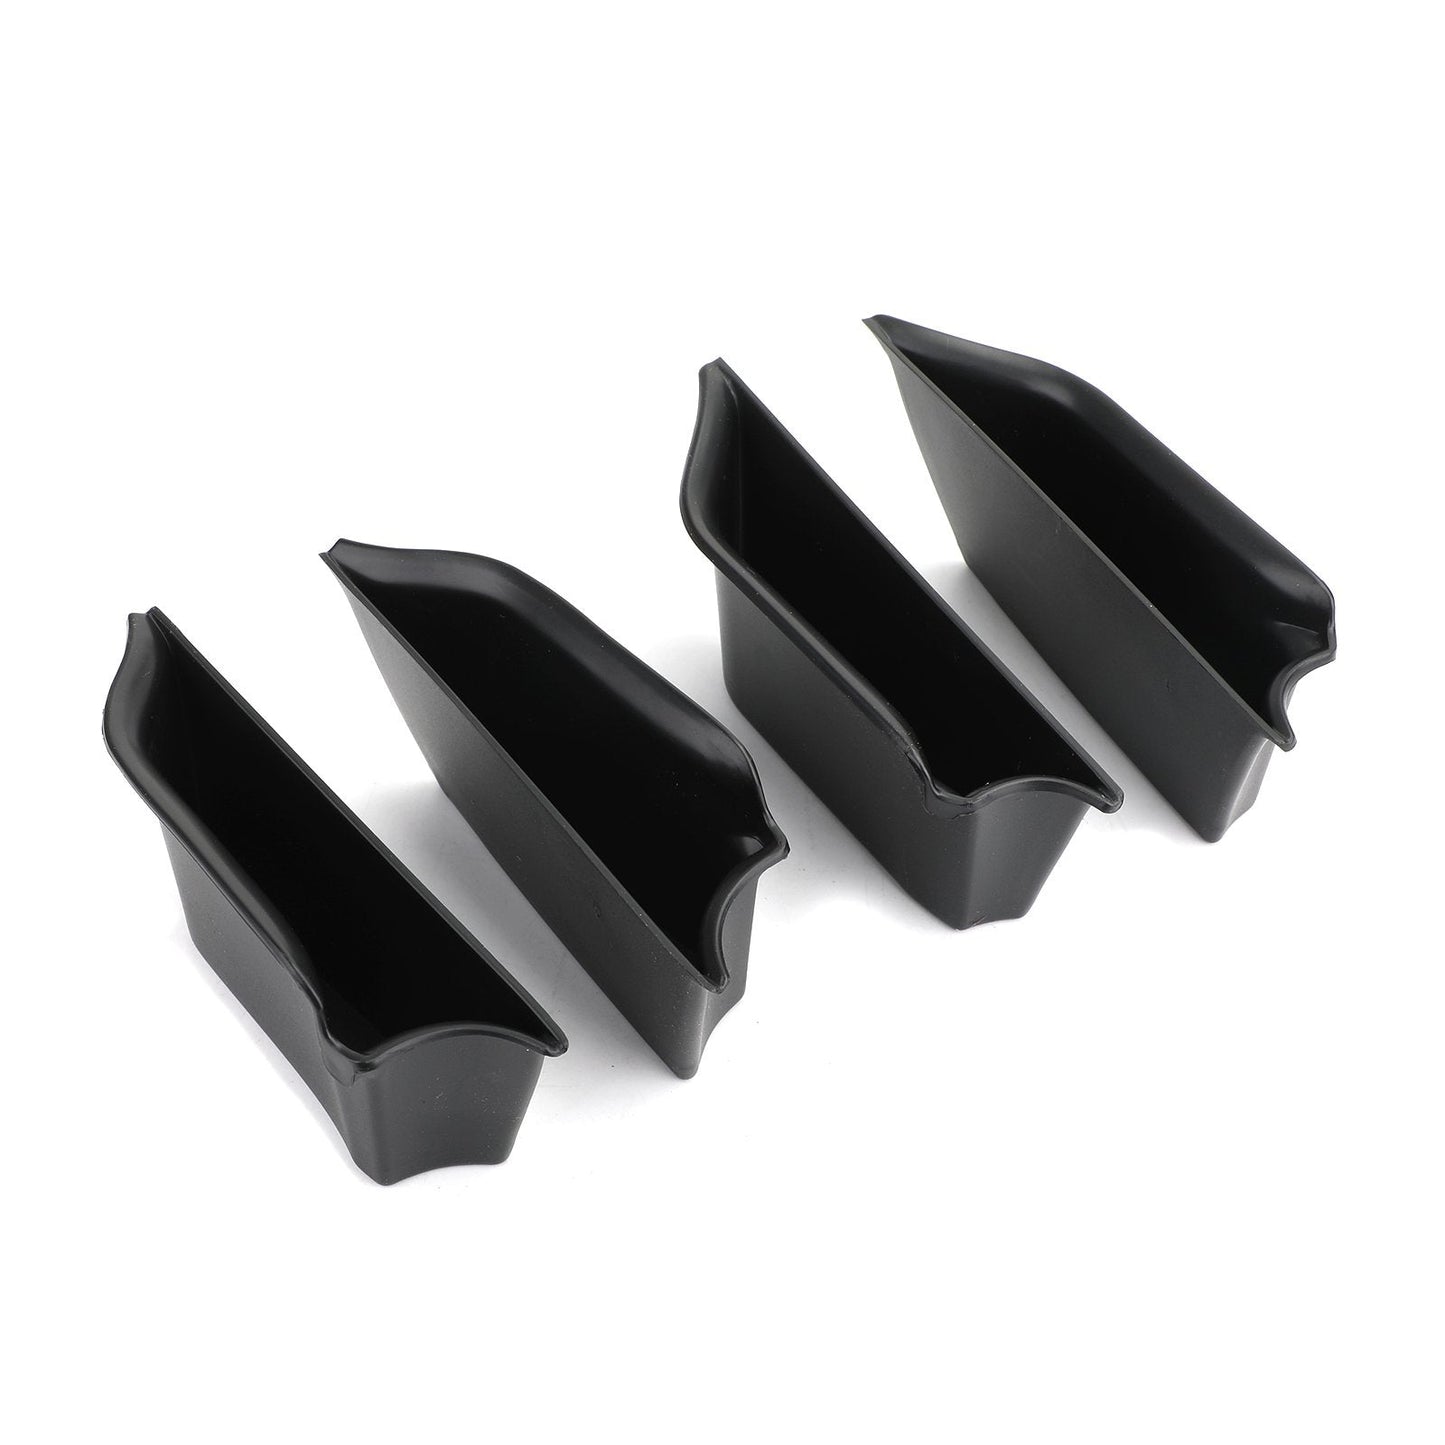 Scatola portaoggetti nera per bracciolo porta interna Organizer Holde Tirm per MINI Cooper F55